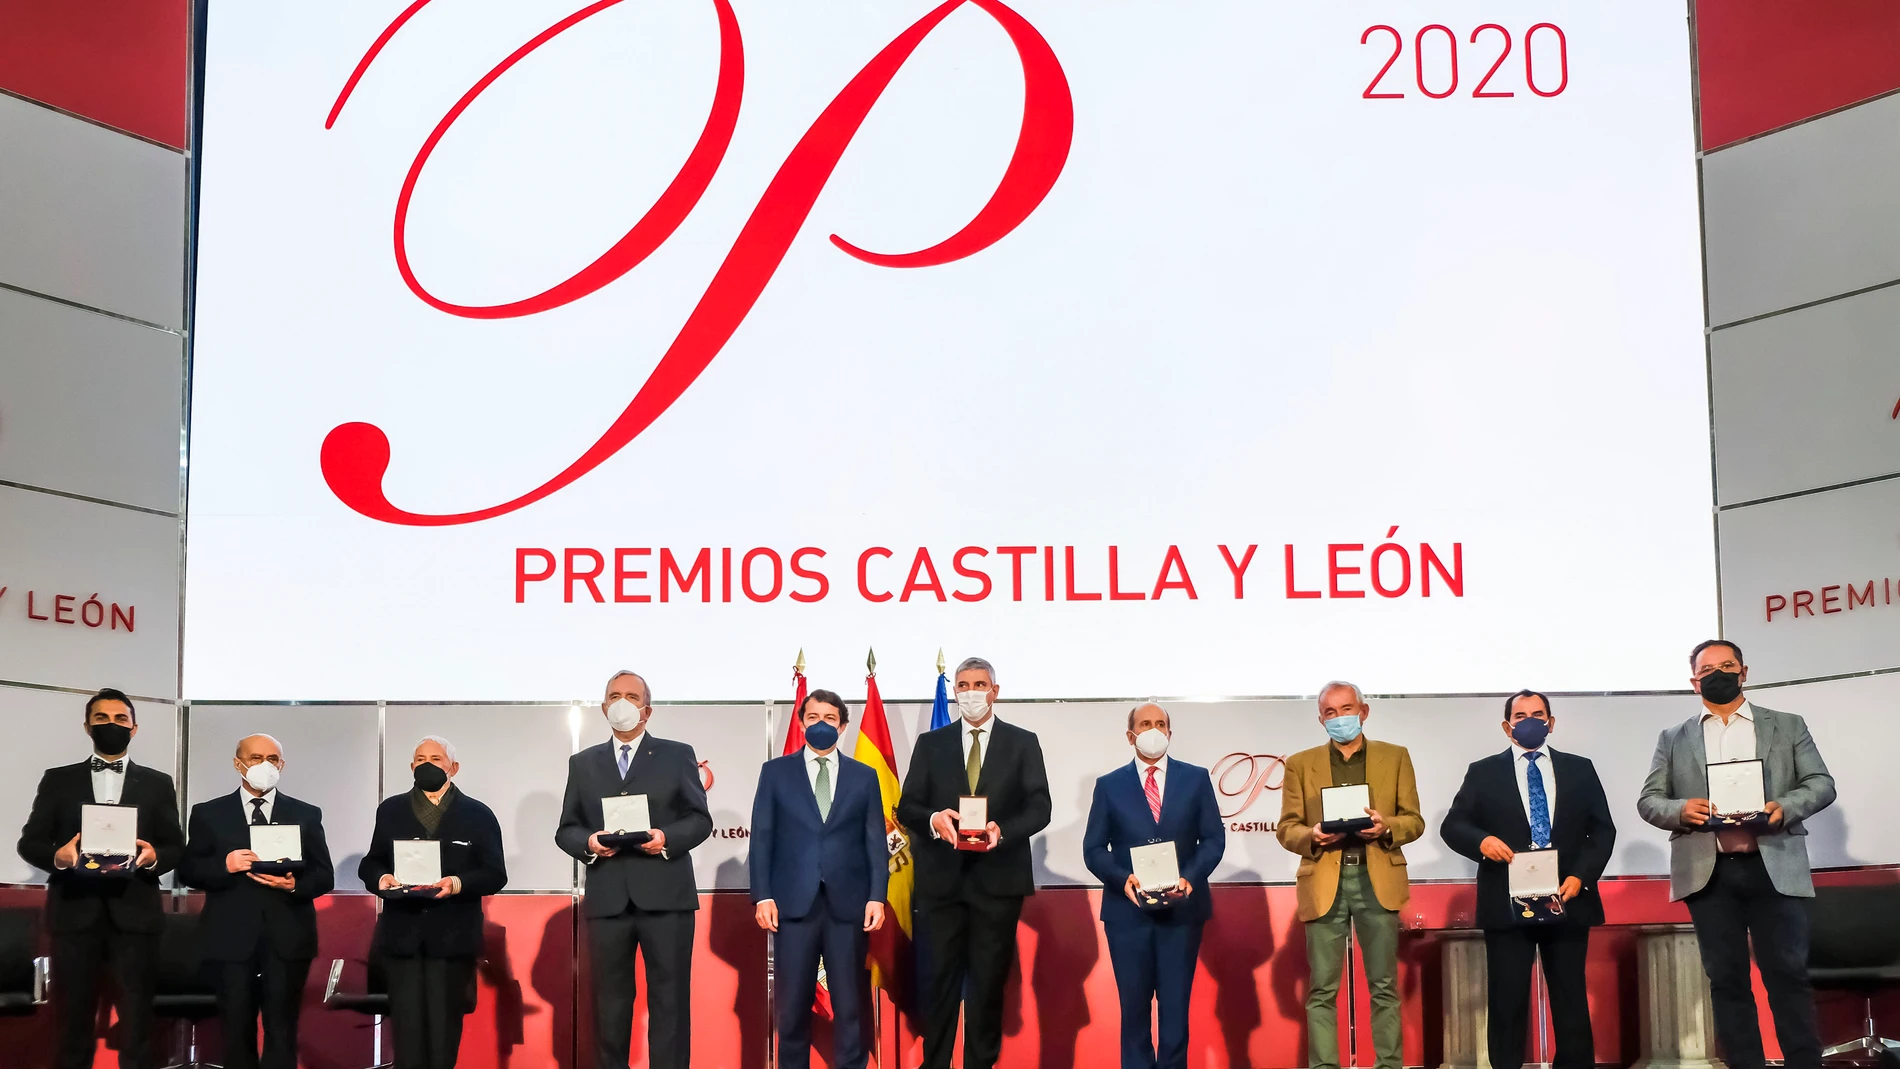 El presidente de la Junta de Castilla y León, Alfonso Fernández Mañueco, junto a los Premios Castilla y León 2020